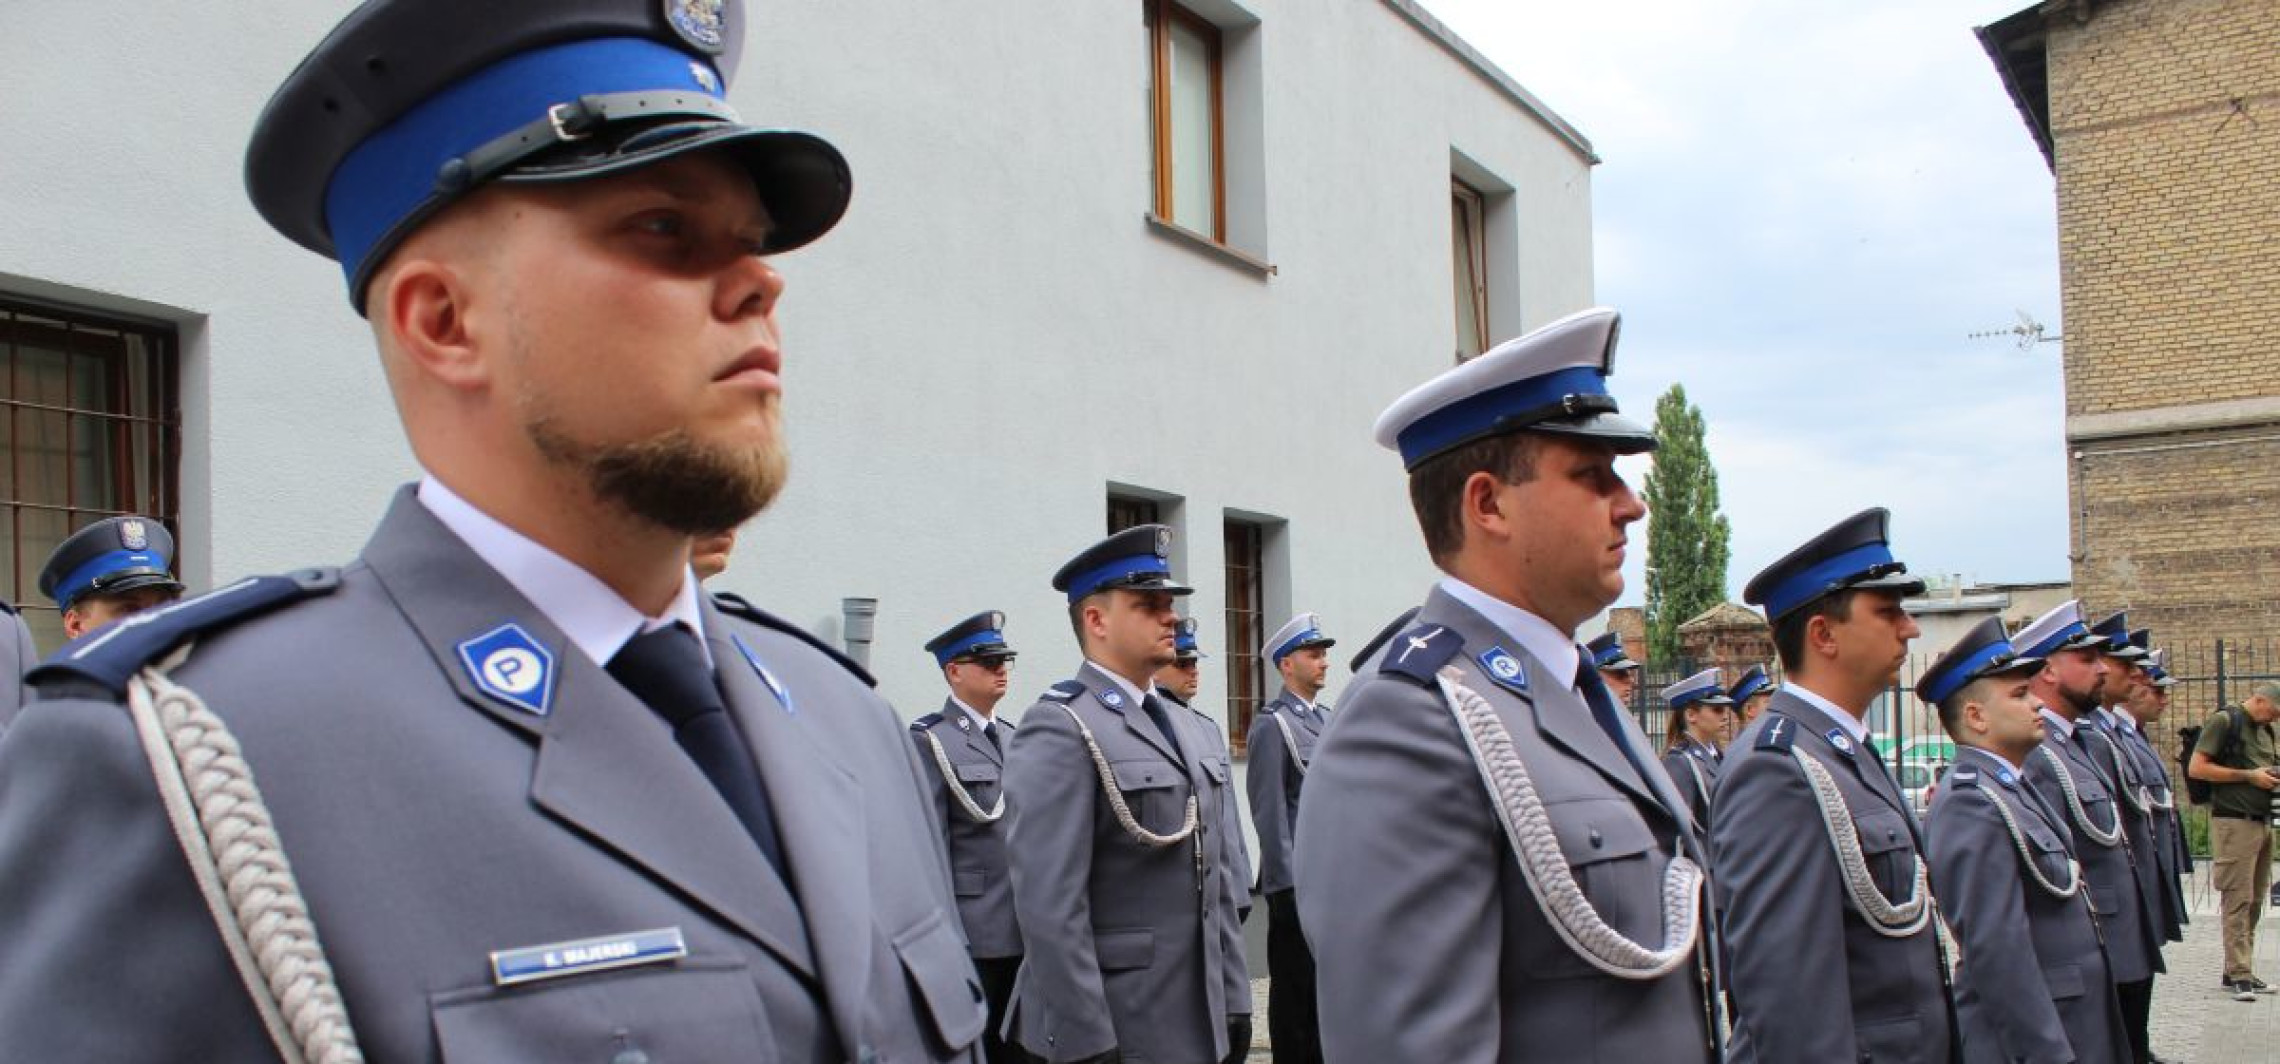 Inowrocław - Inowrocławscy policjanci obchodzą swoje święto